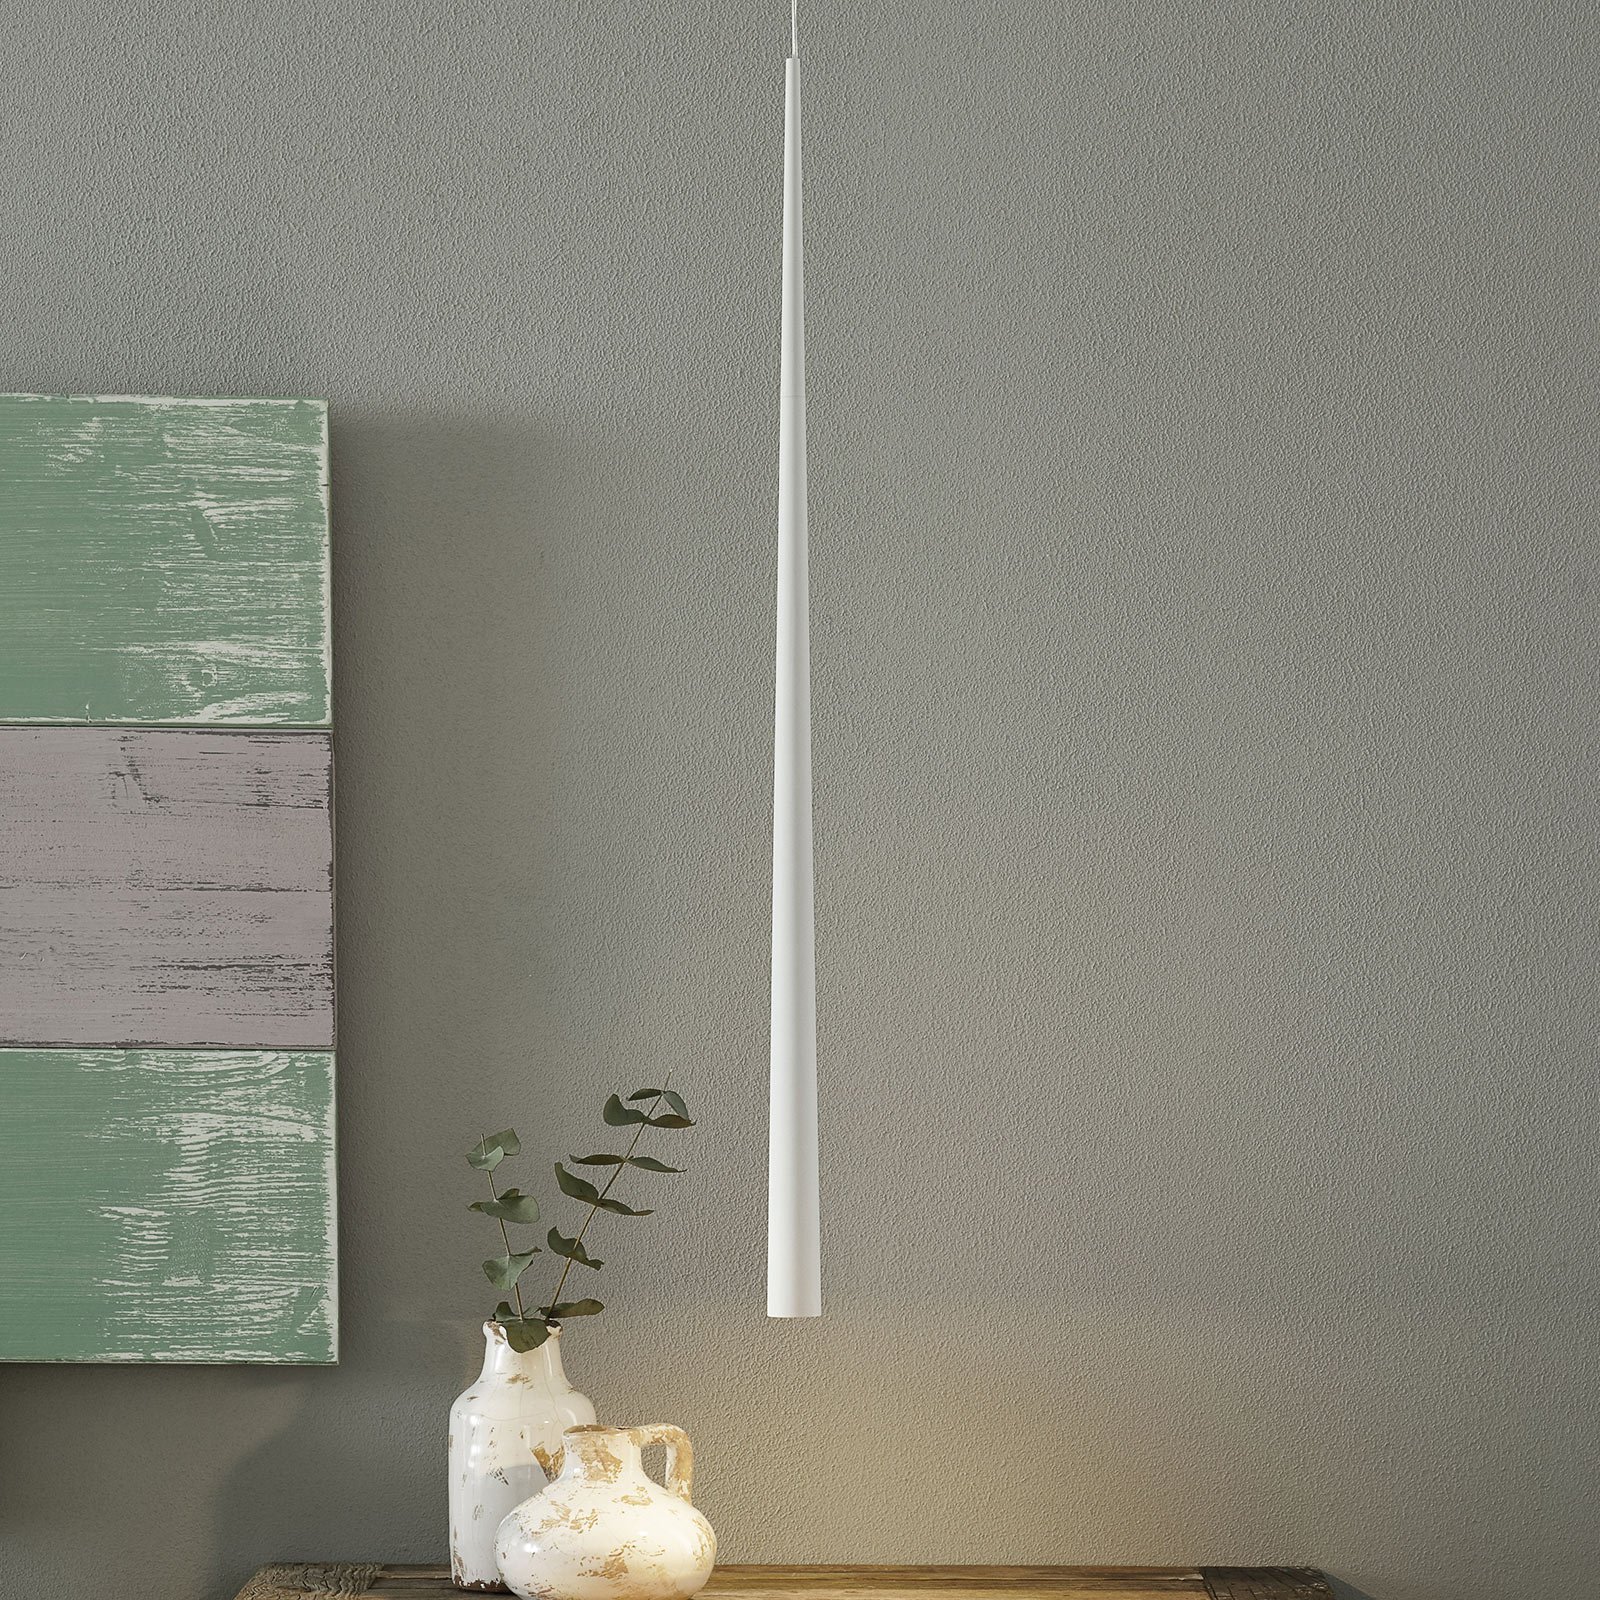 Bendis - lampada LED a sospensione, bianca